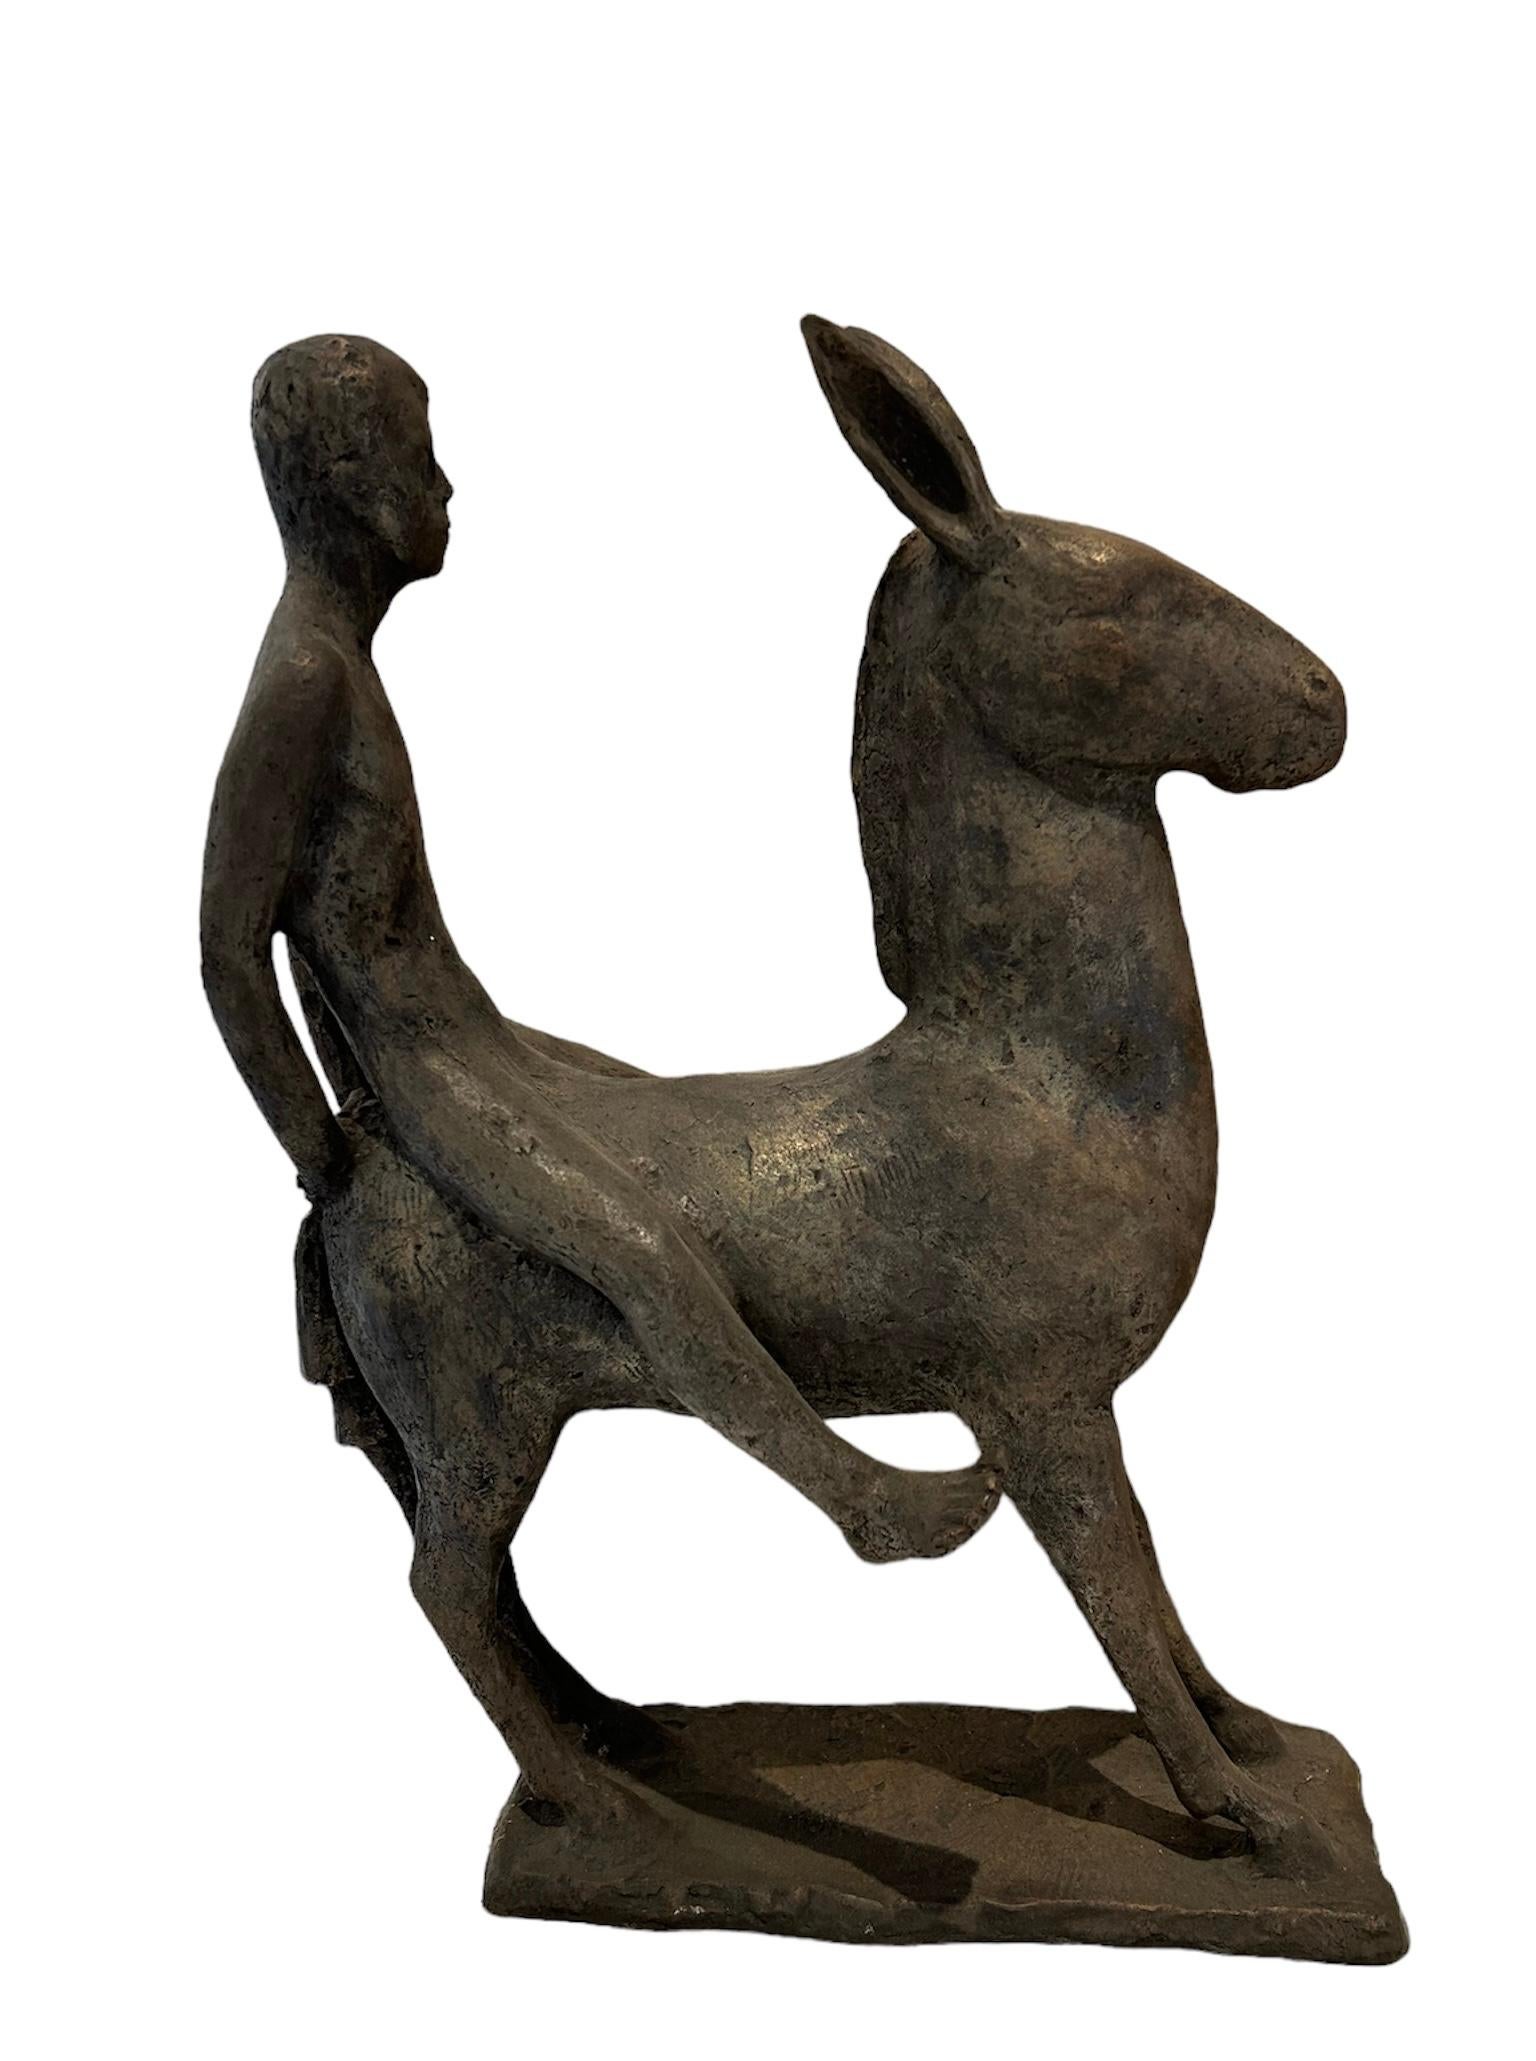 Enrique Alférez Figurative Sculpture - Boy Riding Burro #2